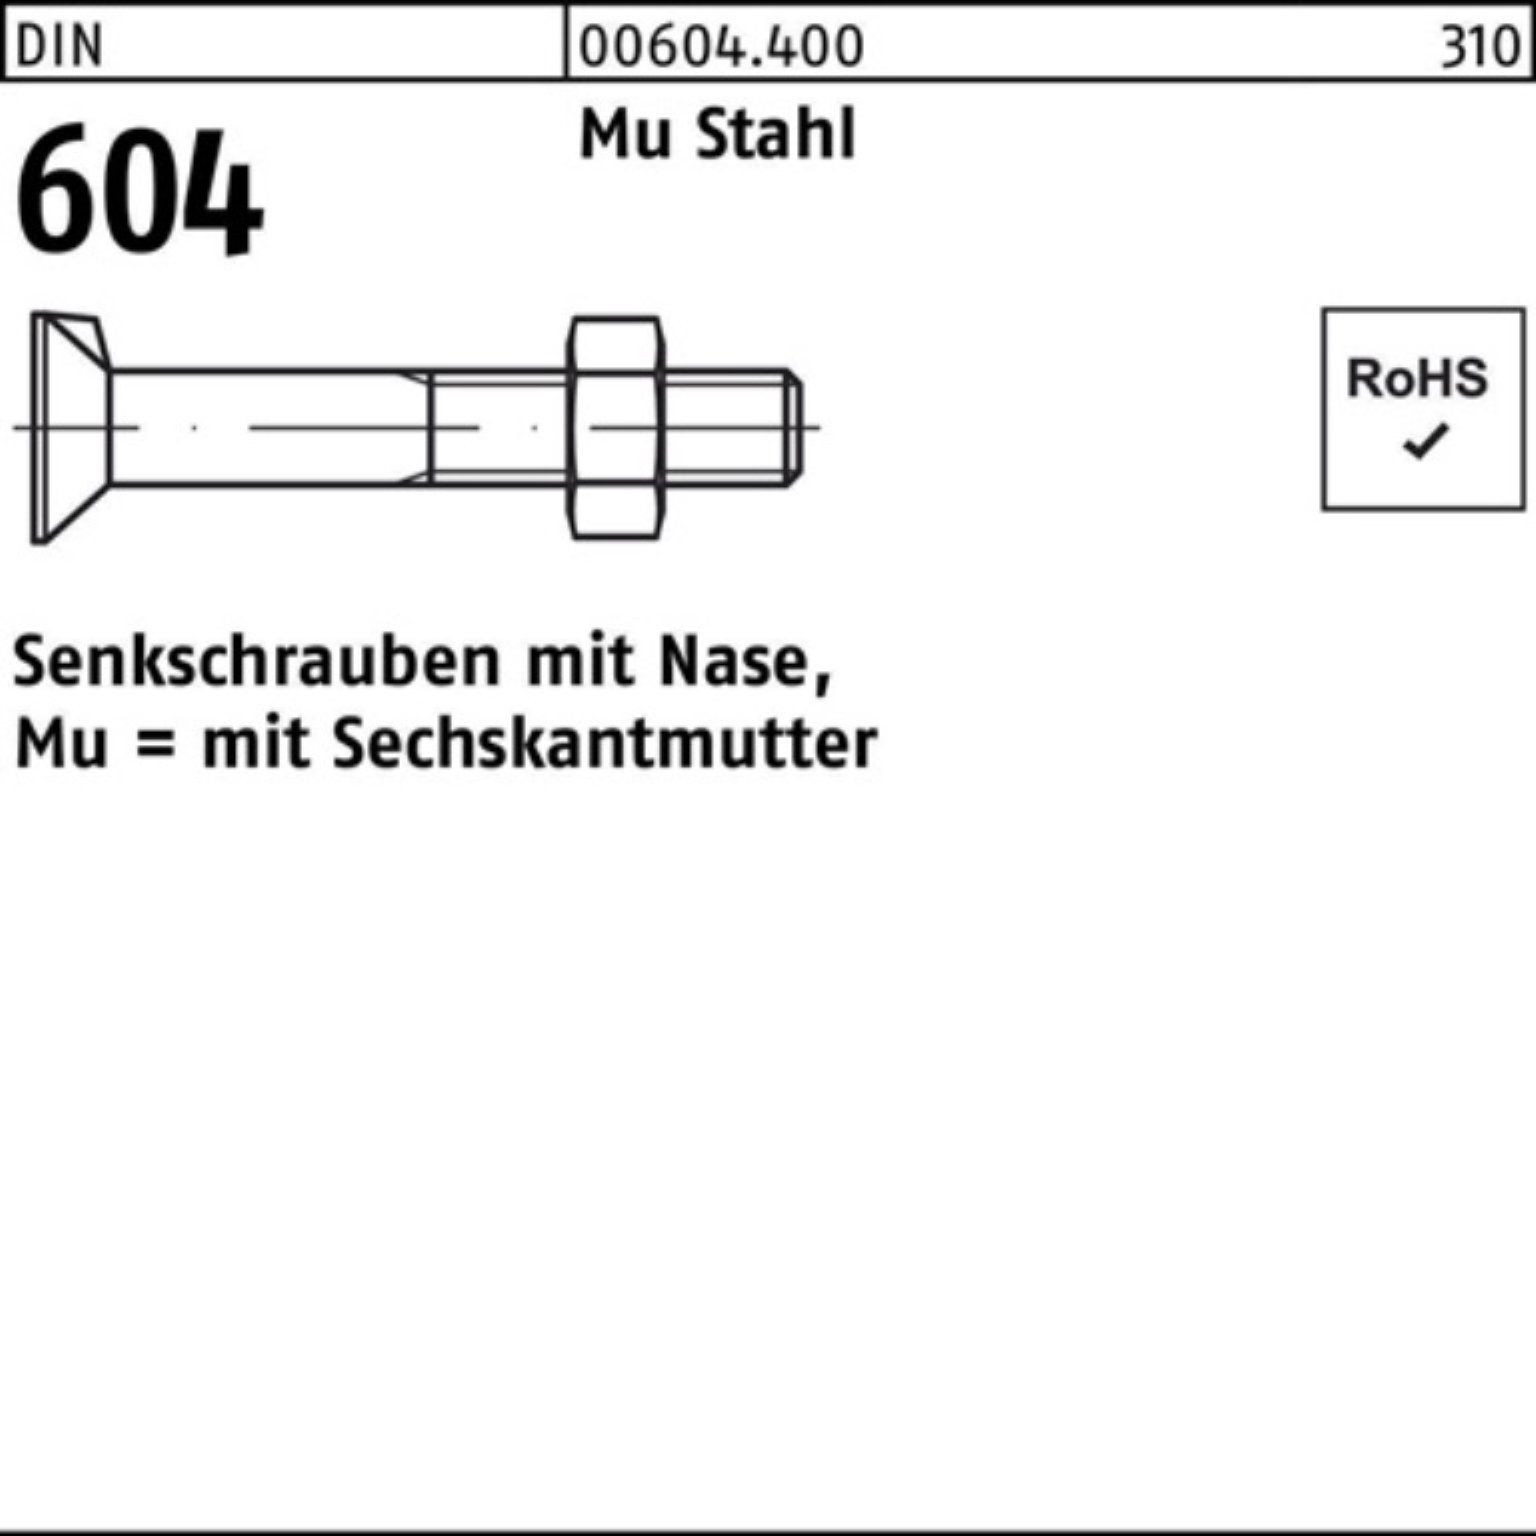 Reyher Senkschraube 100er Pack Senkschraube DIN 604 Nase/6-ktmutter M10x 45 Mu Stahl 4.6 1